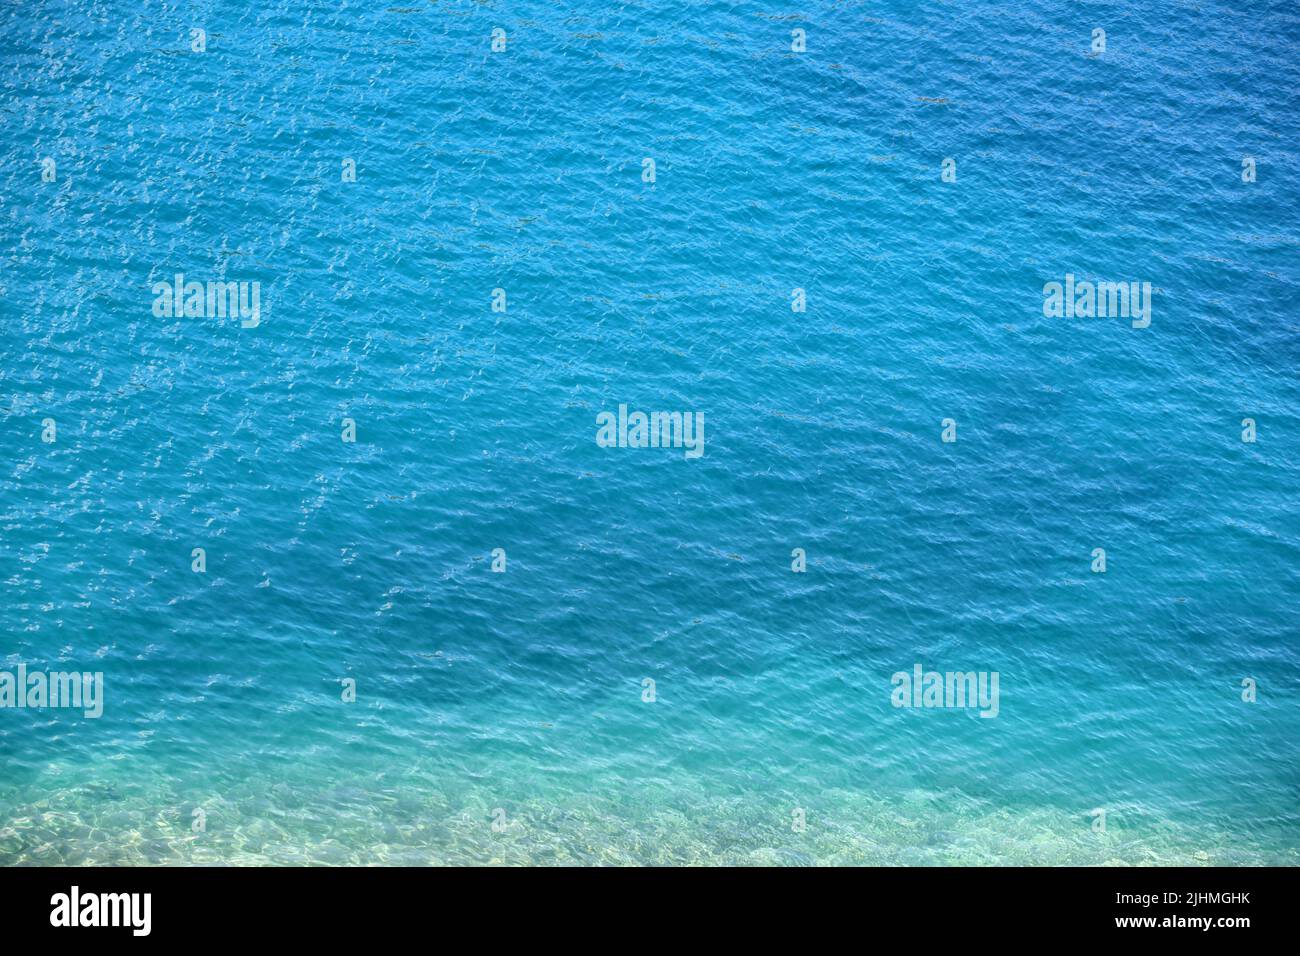 Superficie blu dell'acqua di mare con pietre sul fondo. Acqua turchese chiara per lo sfondo Foto Stock